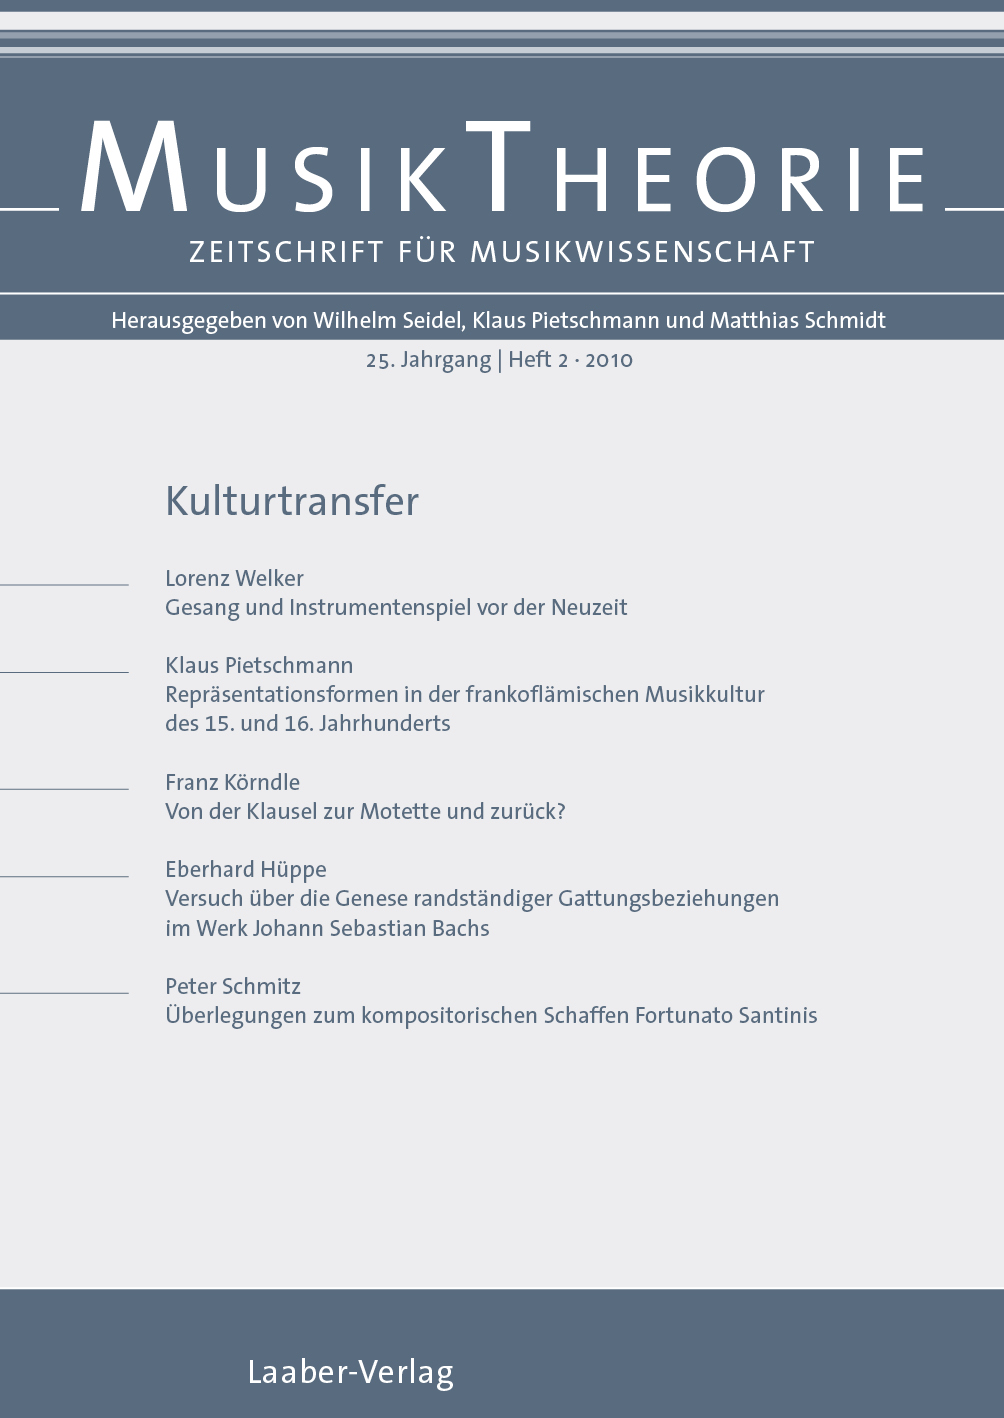 Musiktheorie Heft 2/2010